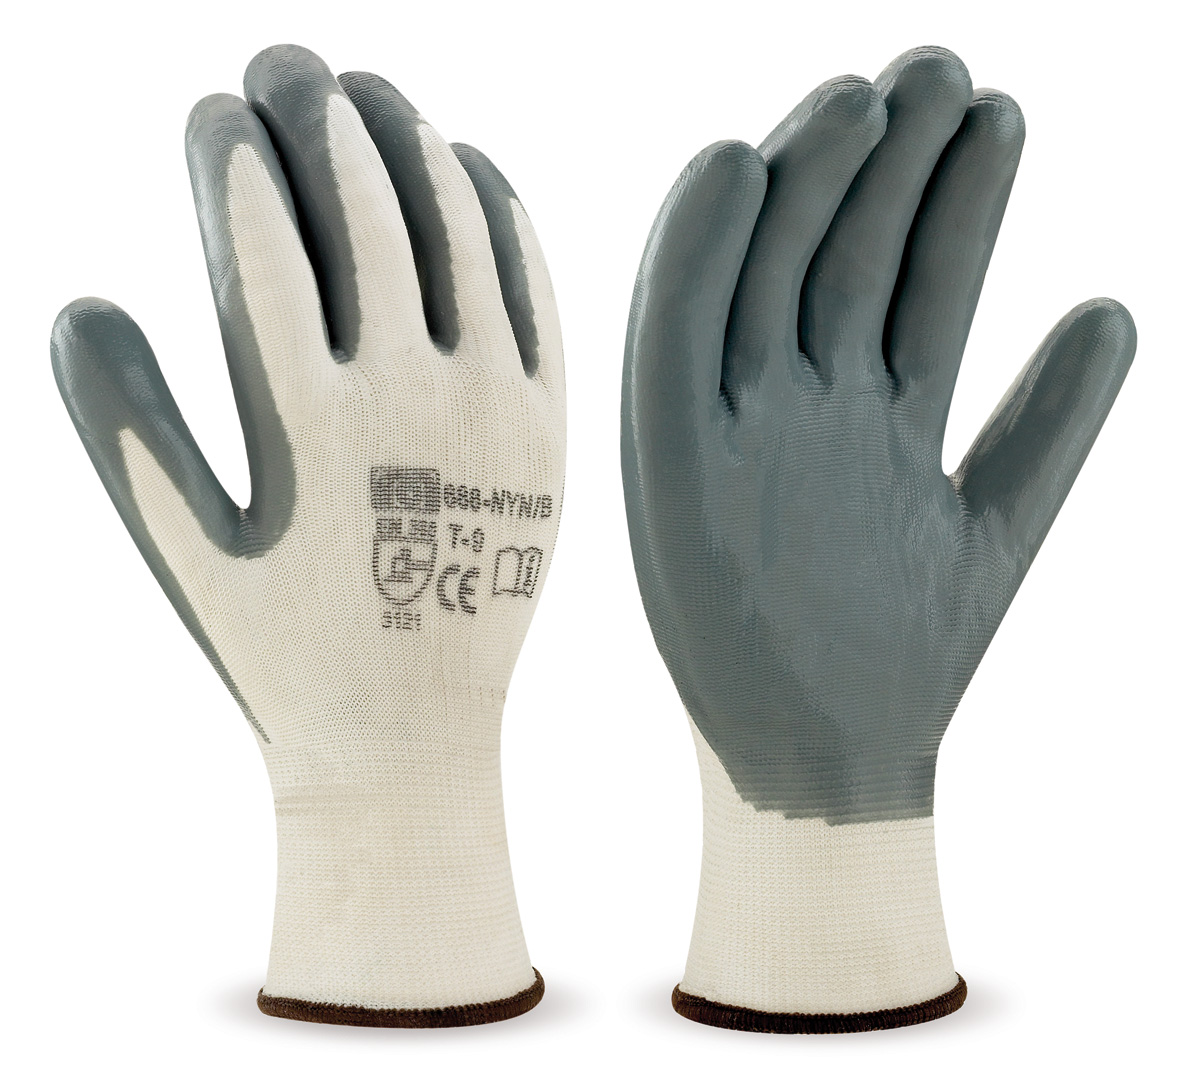 688-NYN/B Luvas de Trabalho Nylon Luva de poliéster cor branca com cobertura de nitrilo em cor cinzenta.